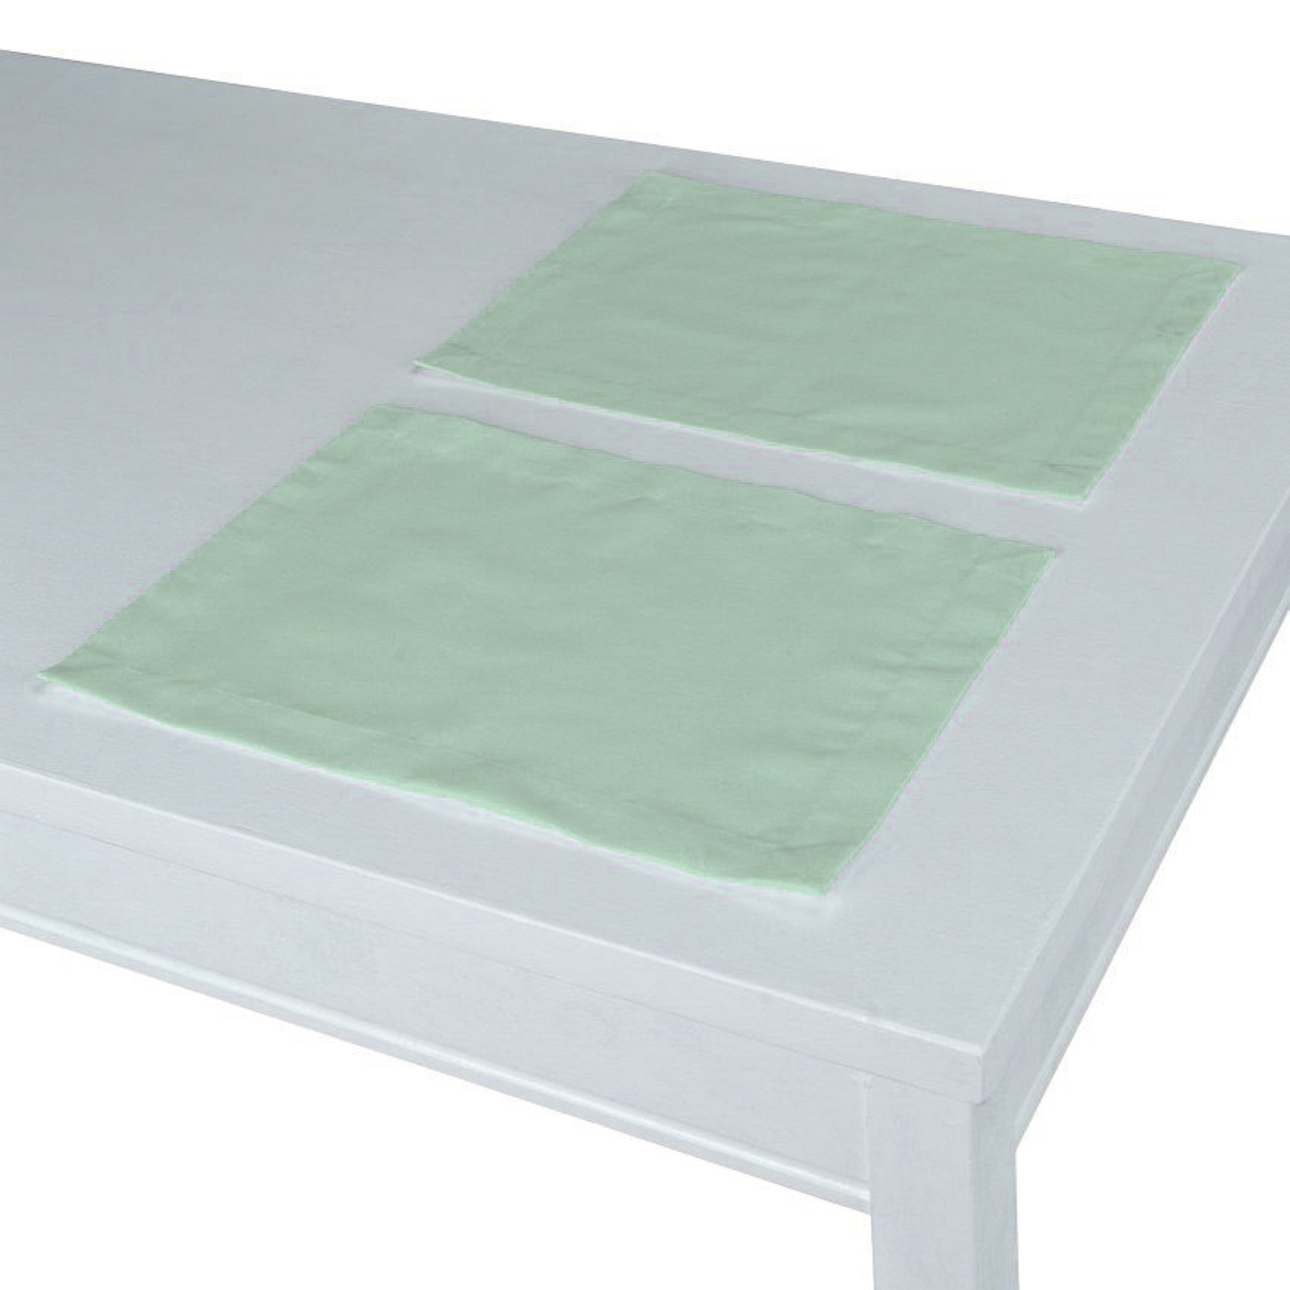 Tischset 2 Stck., grün, 30 x 40 cm, Loneta (133-61) günstig online kaufen